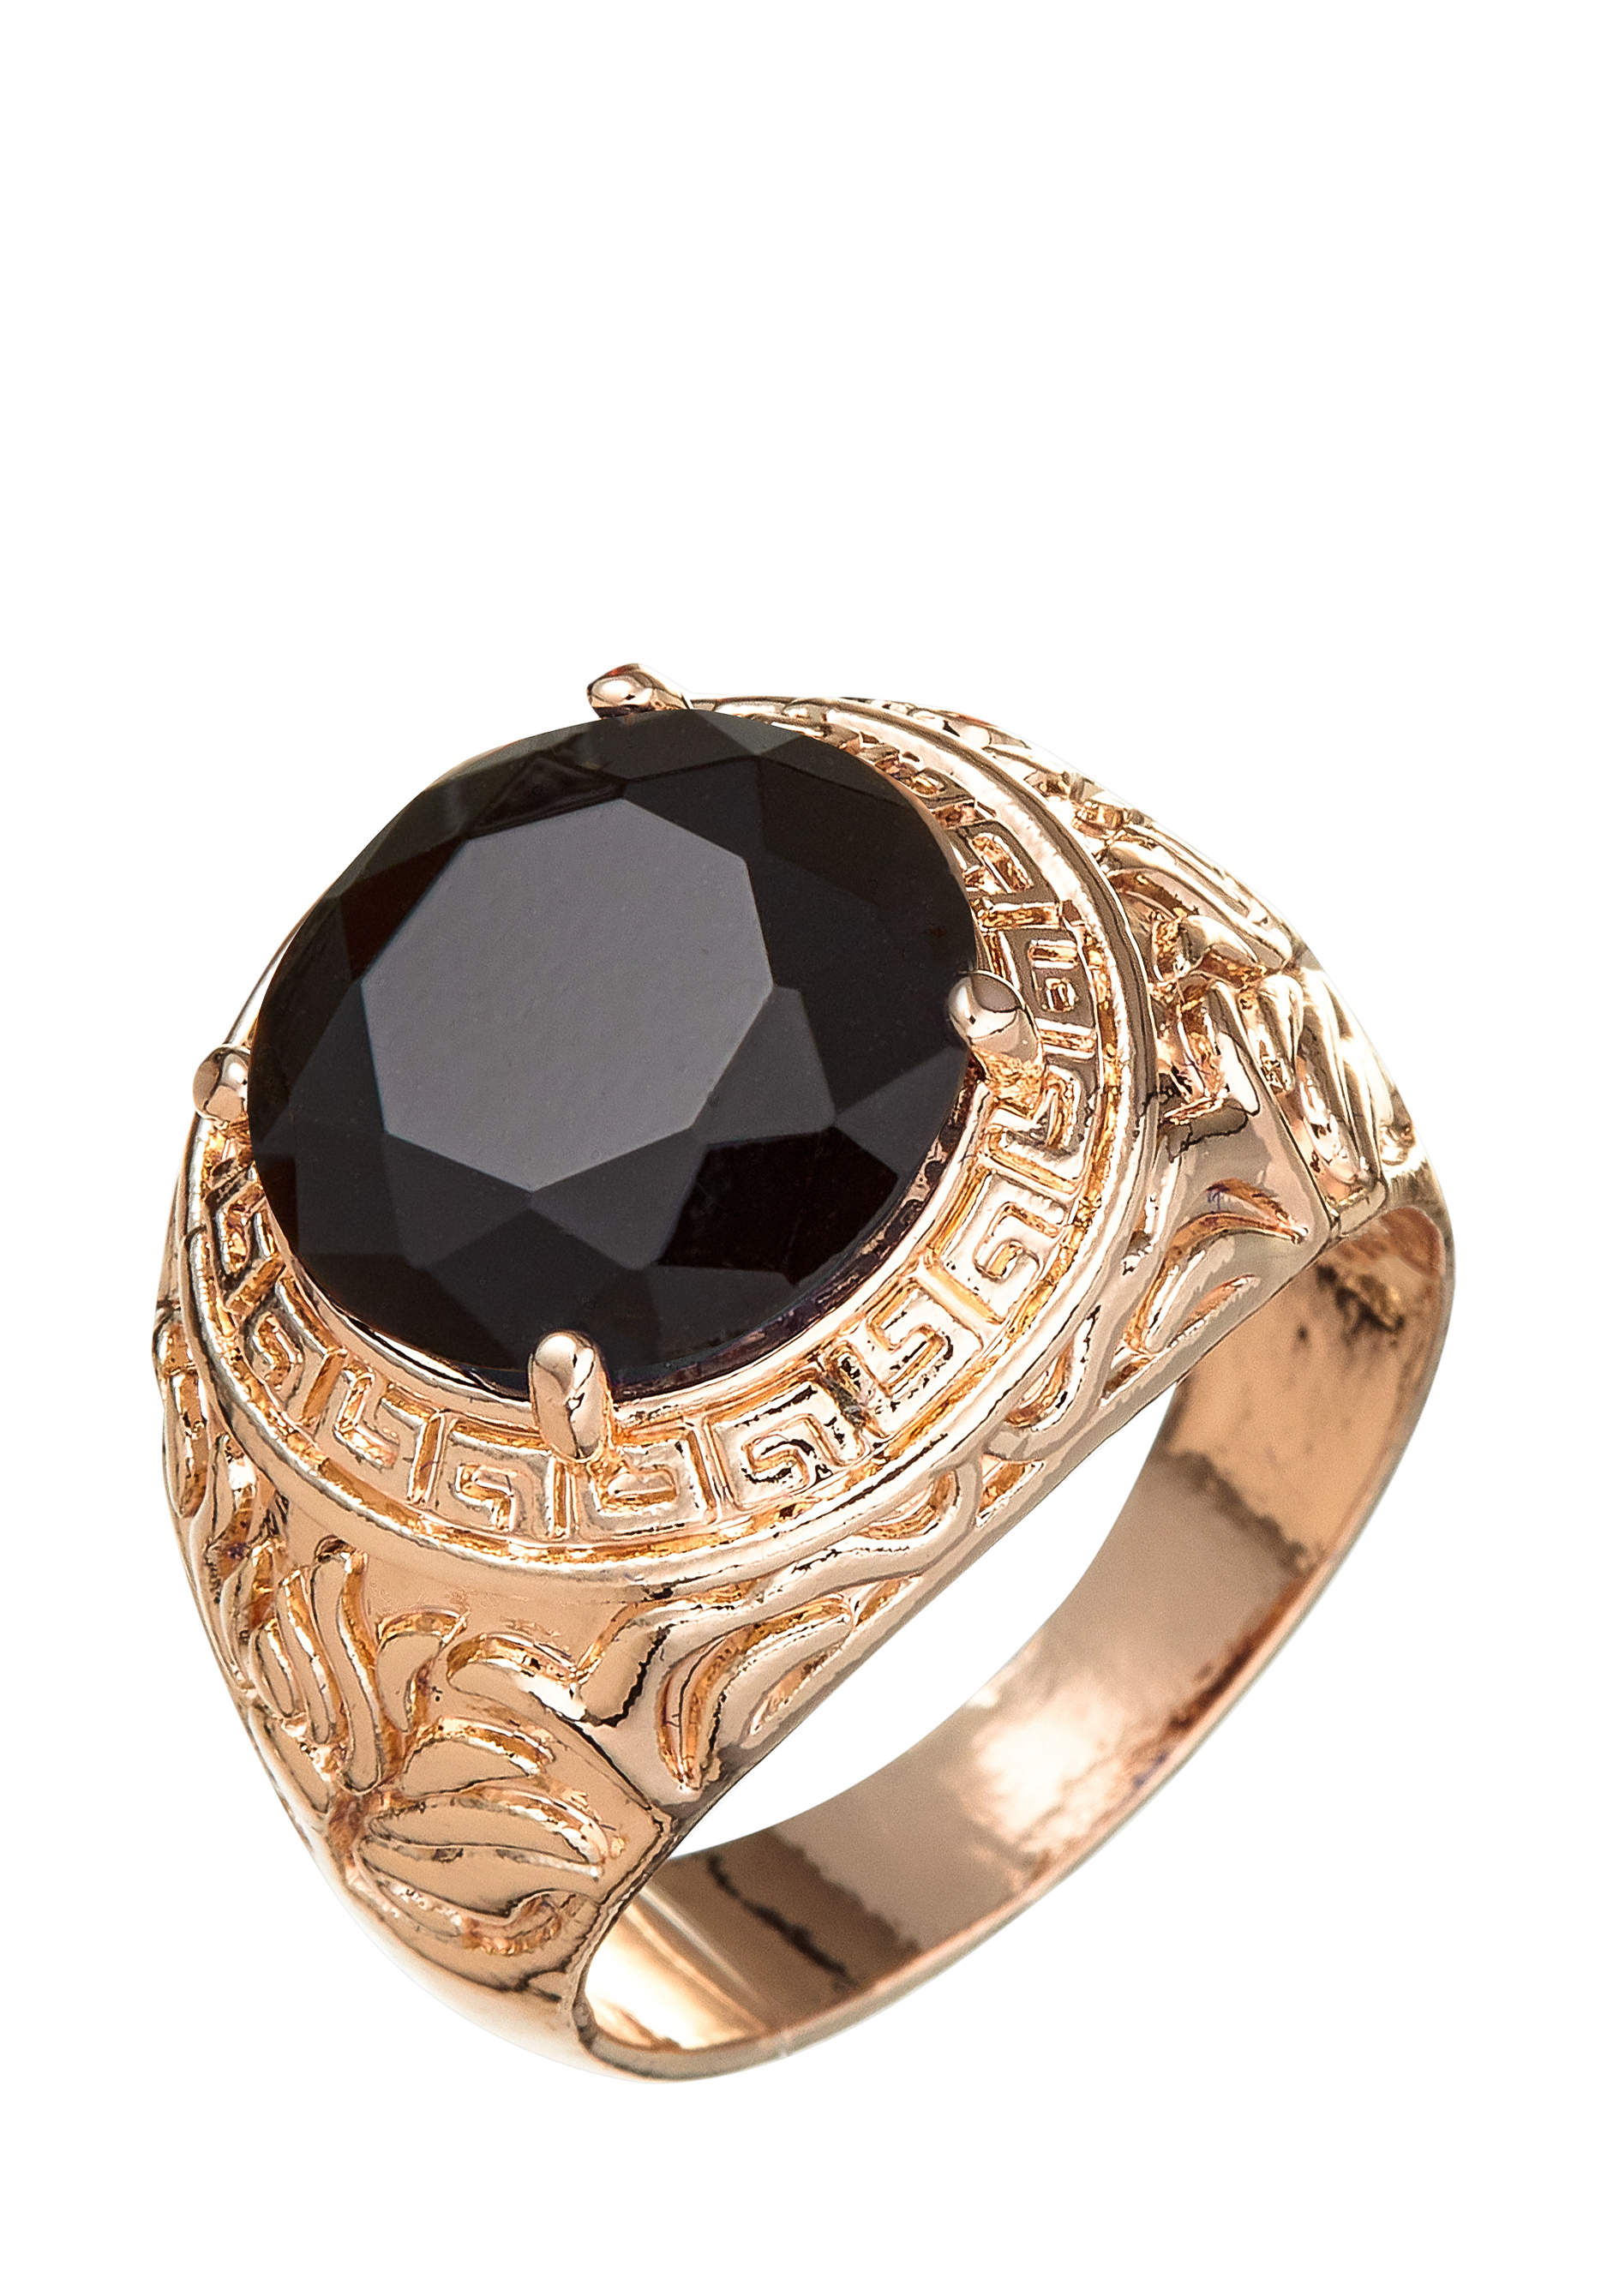 Комплект "Загадочная ночь" Apsara, цвет черный, размер 18 перстень - фото 2